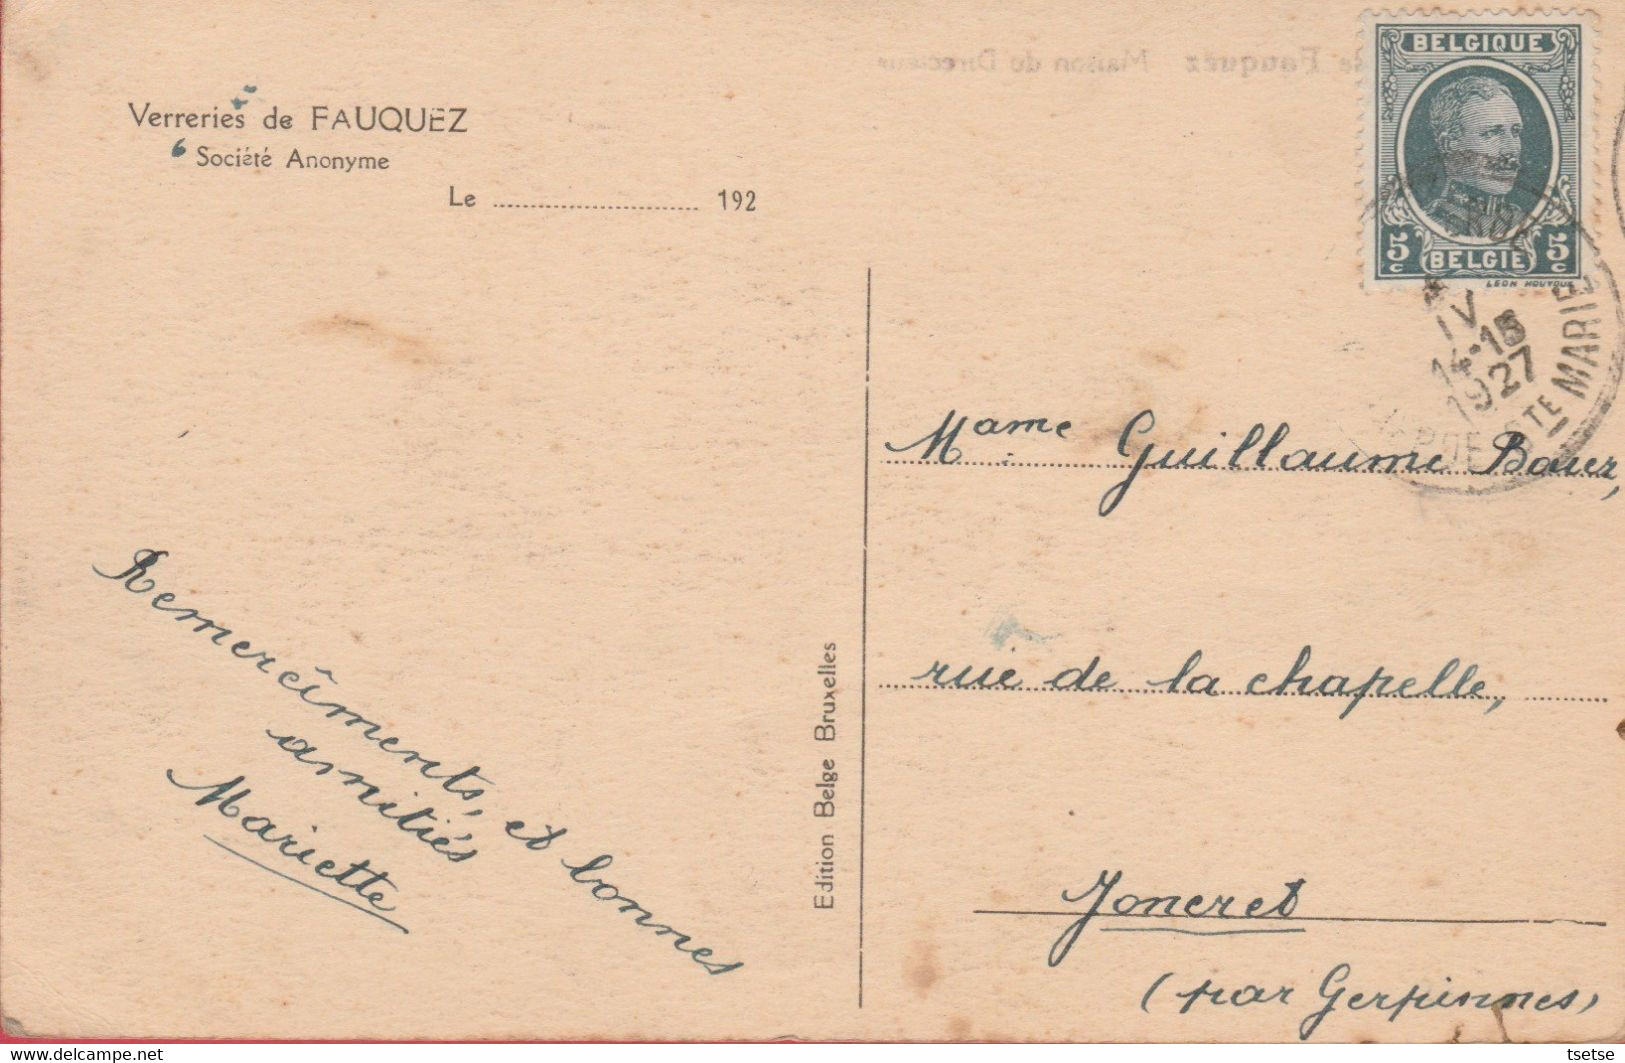 Fauquez - Verreries - Maison Du Directeur - 1927 ( Voir Verso ) - Ittre